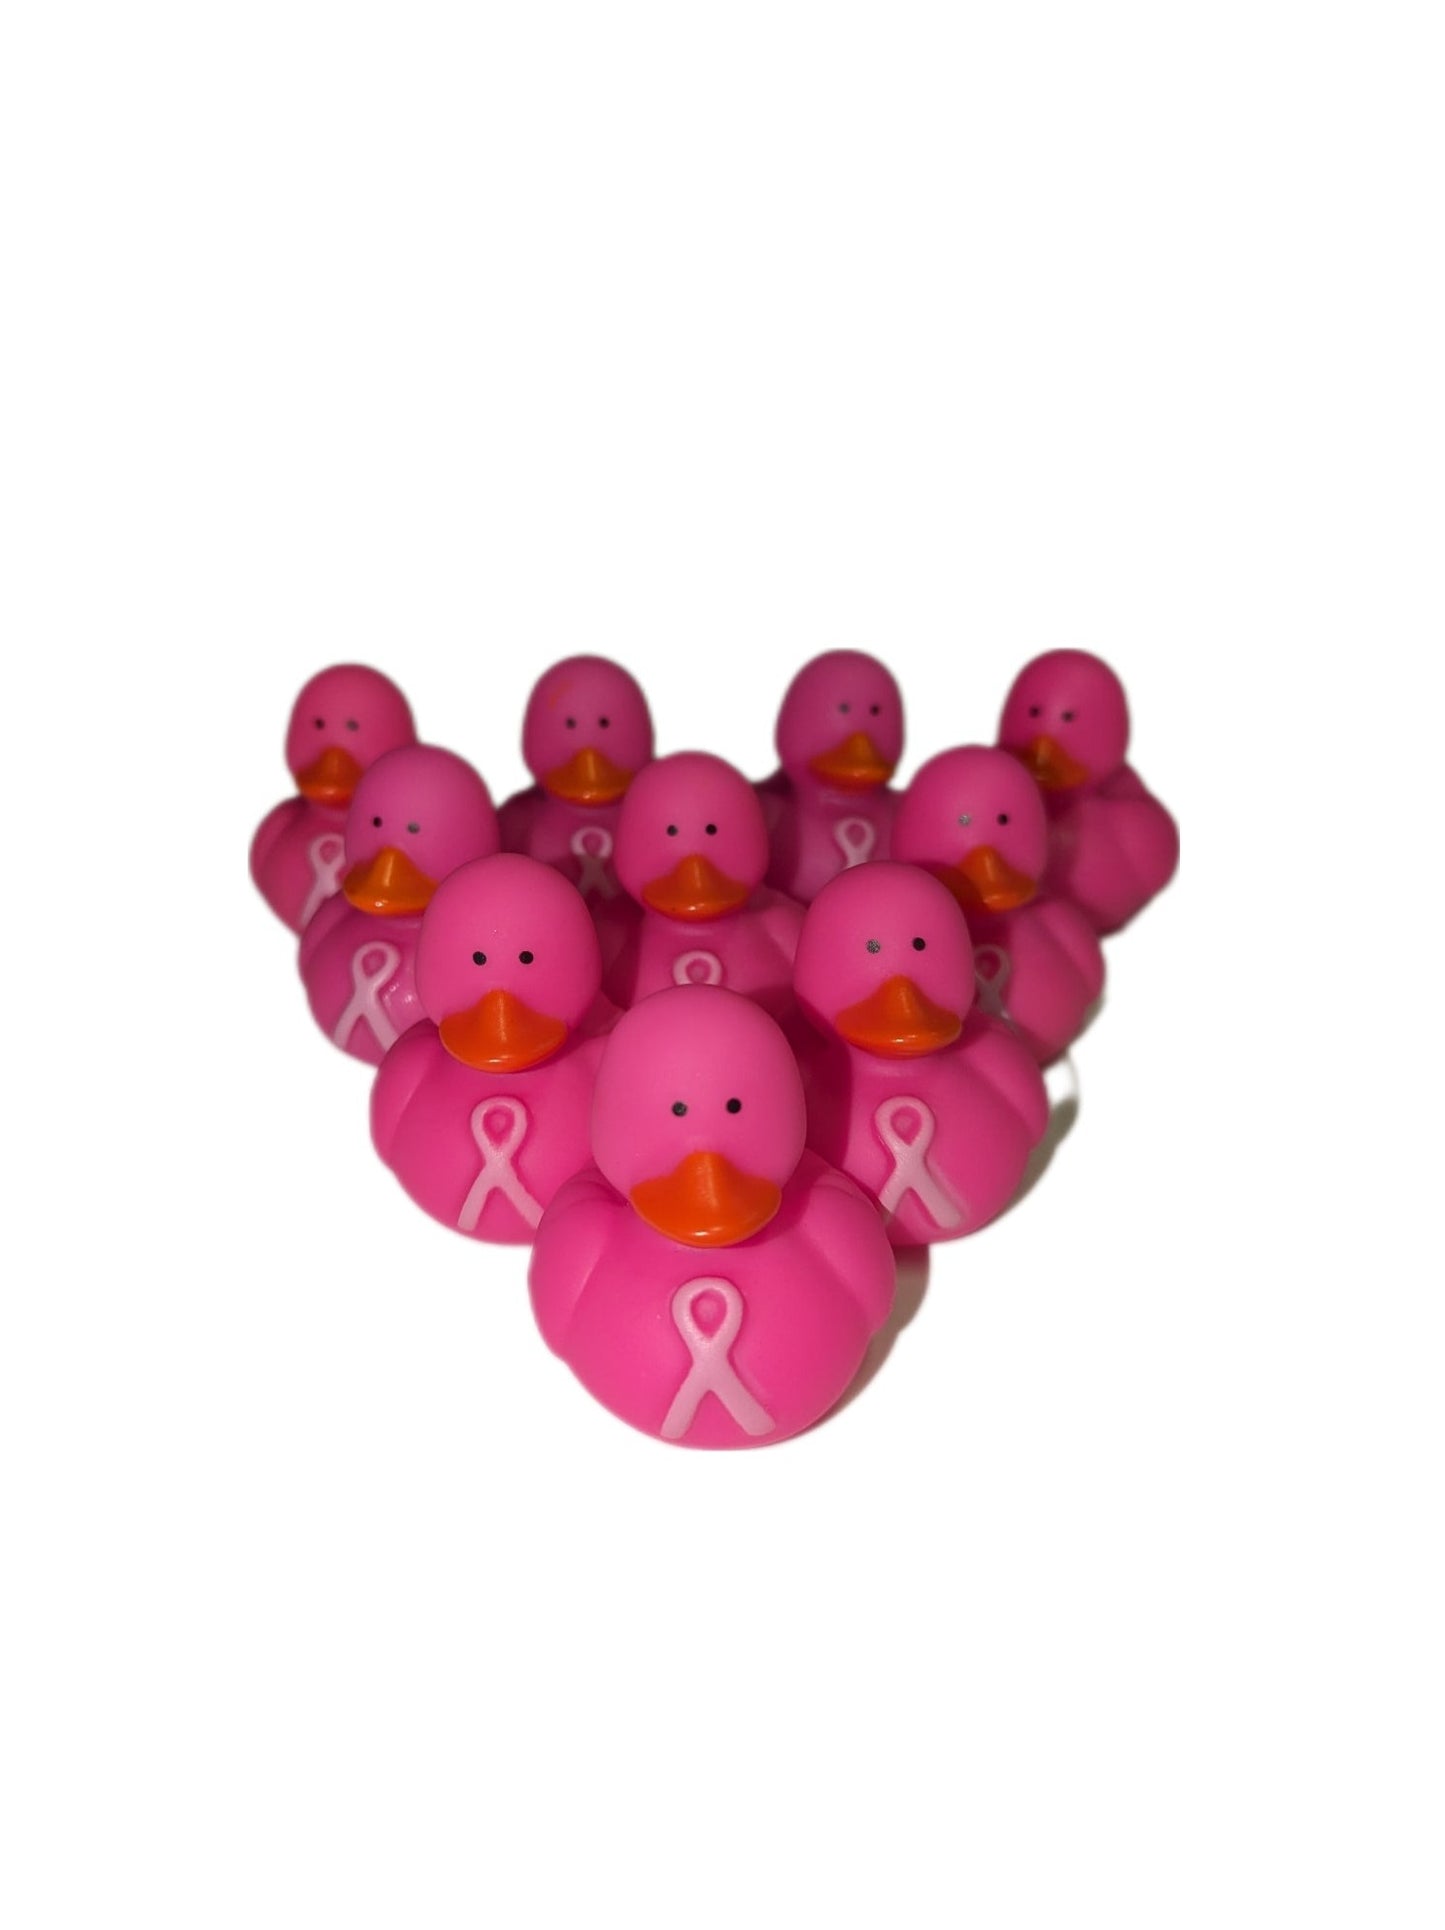 10 Hot Pink Breast Cancer Awareness Ducks - 2" Rubber Ducks